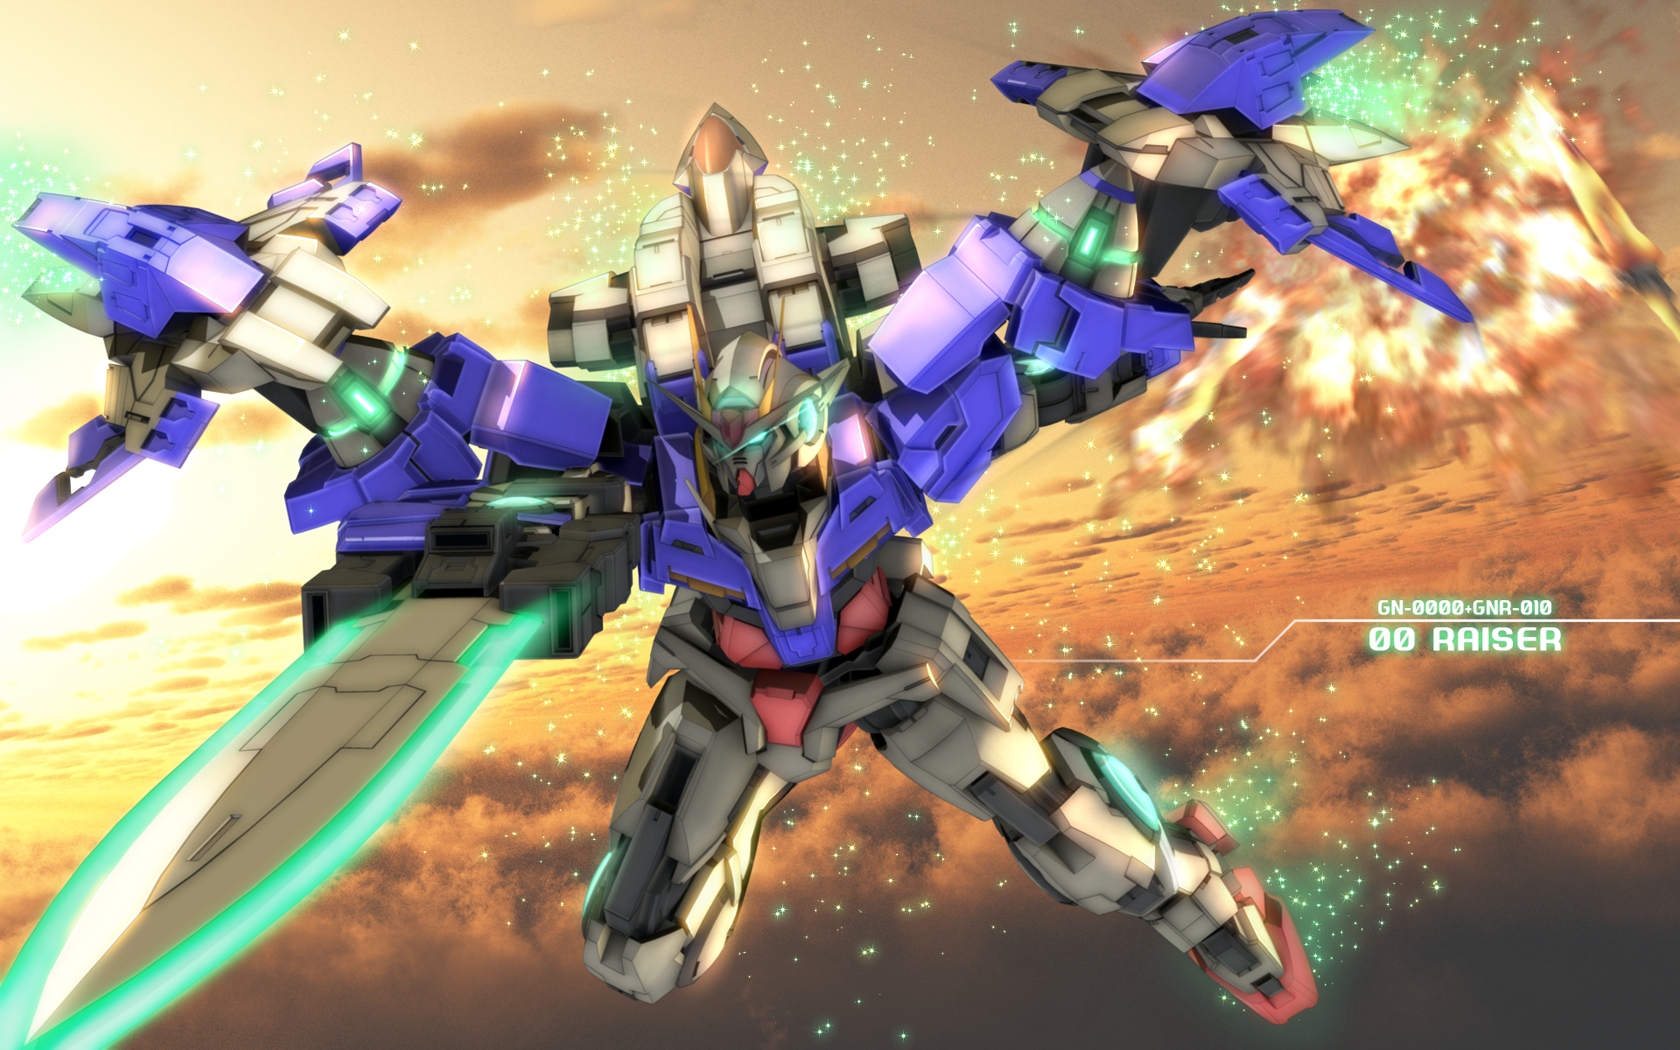 Anime Mech Gundam 00 Raiser Mobile Suit Gundam 00 Super Robot Wars Artwork Digital Art Fan Art 1680x1050